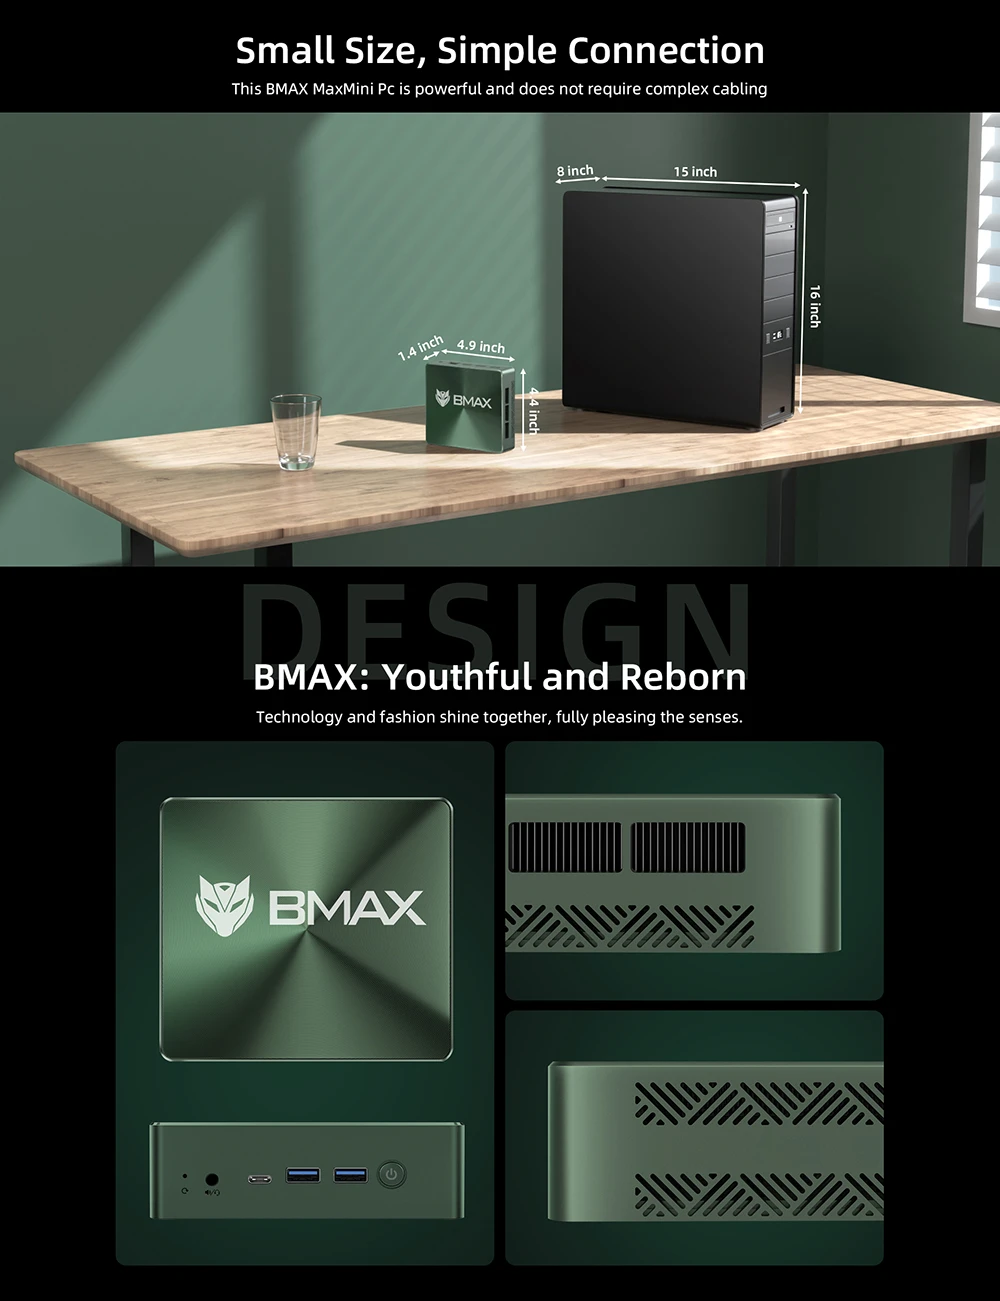 BMAX B6 Plus Mini PC, Intel Core i3-1000NG4 up to 3.2GHz, 12GB LPDDR4 512GB SSD, 2xHDMI Full Feature Type-C 4K Triple Display, 3xUSB3.0 1000Mbps RJ45 LAN, Wi-Fi 5 BT 4.2 3.5mm Audio, Windows 11 Pro-EU